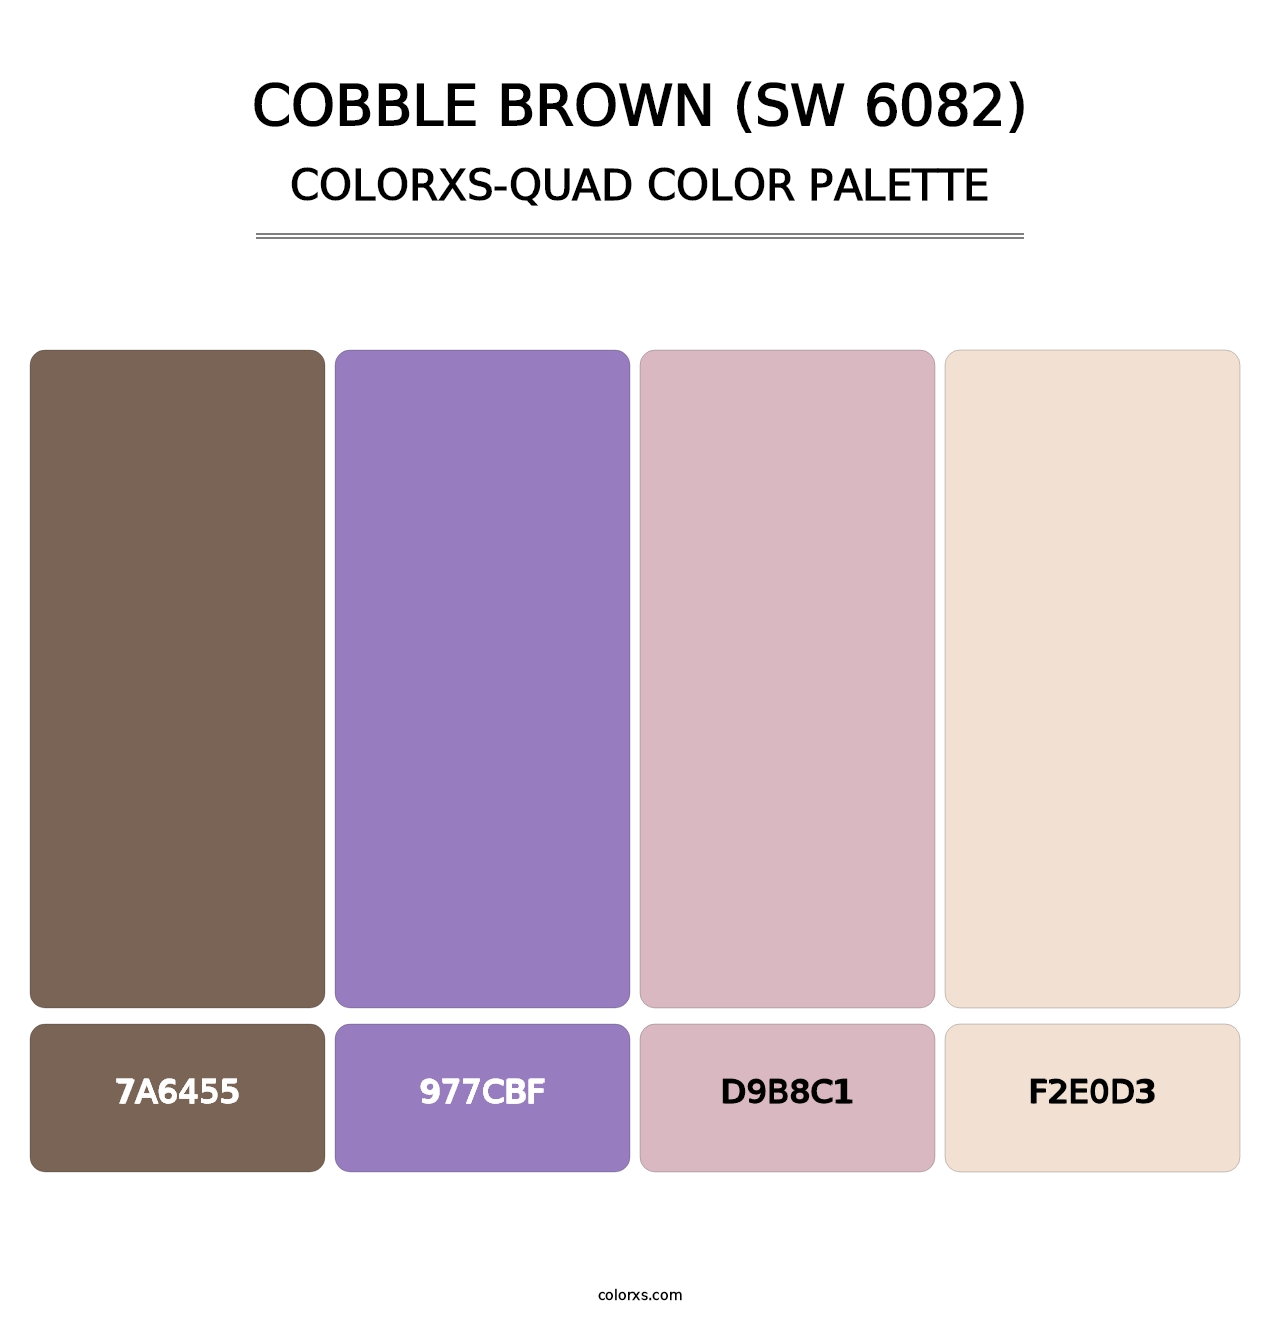 Cobble Brown (SW 6082) - Colorxs Quad Palette